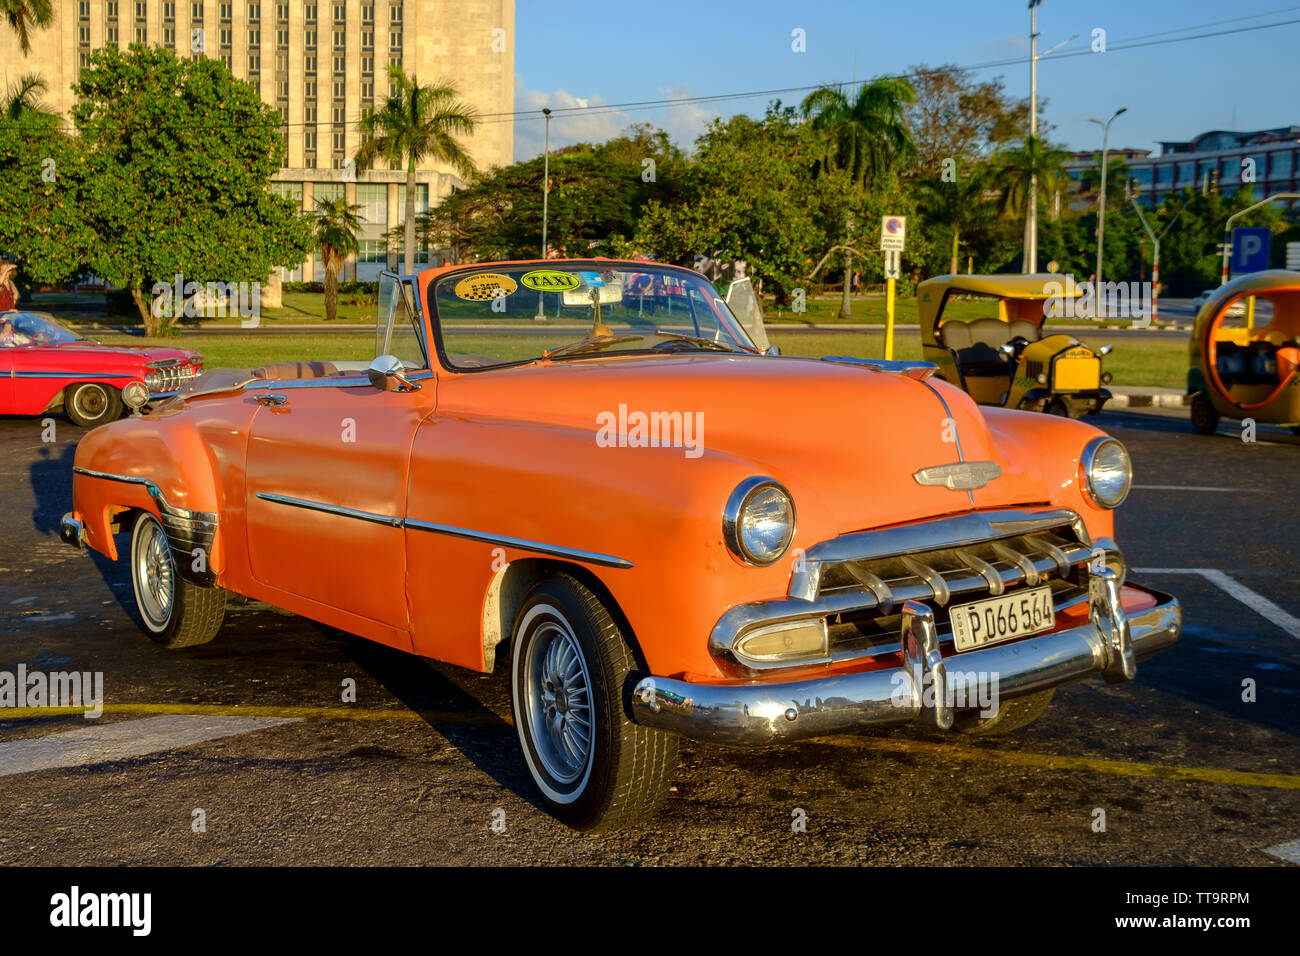 Classic voiture américaine à La Havane, Cuba Banque D'Images